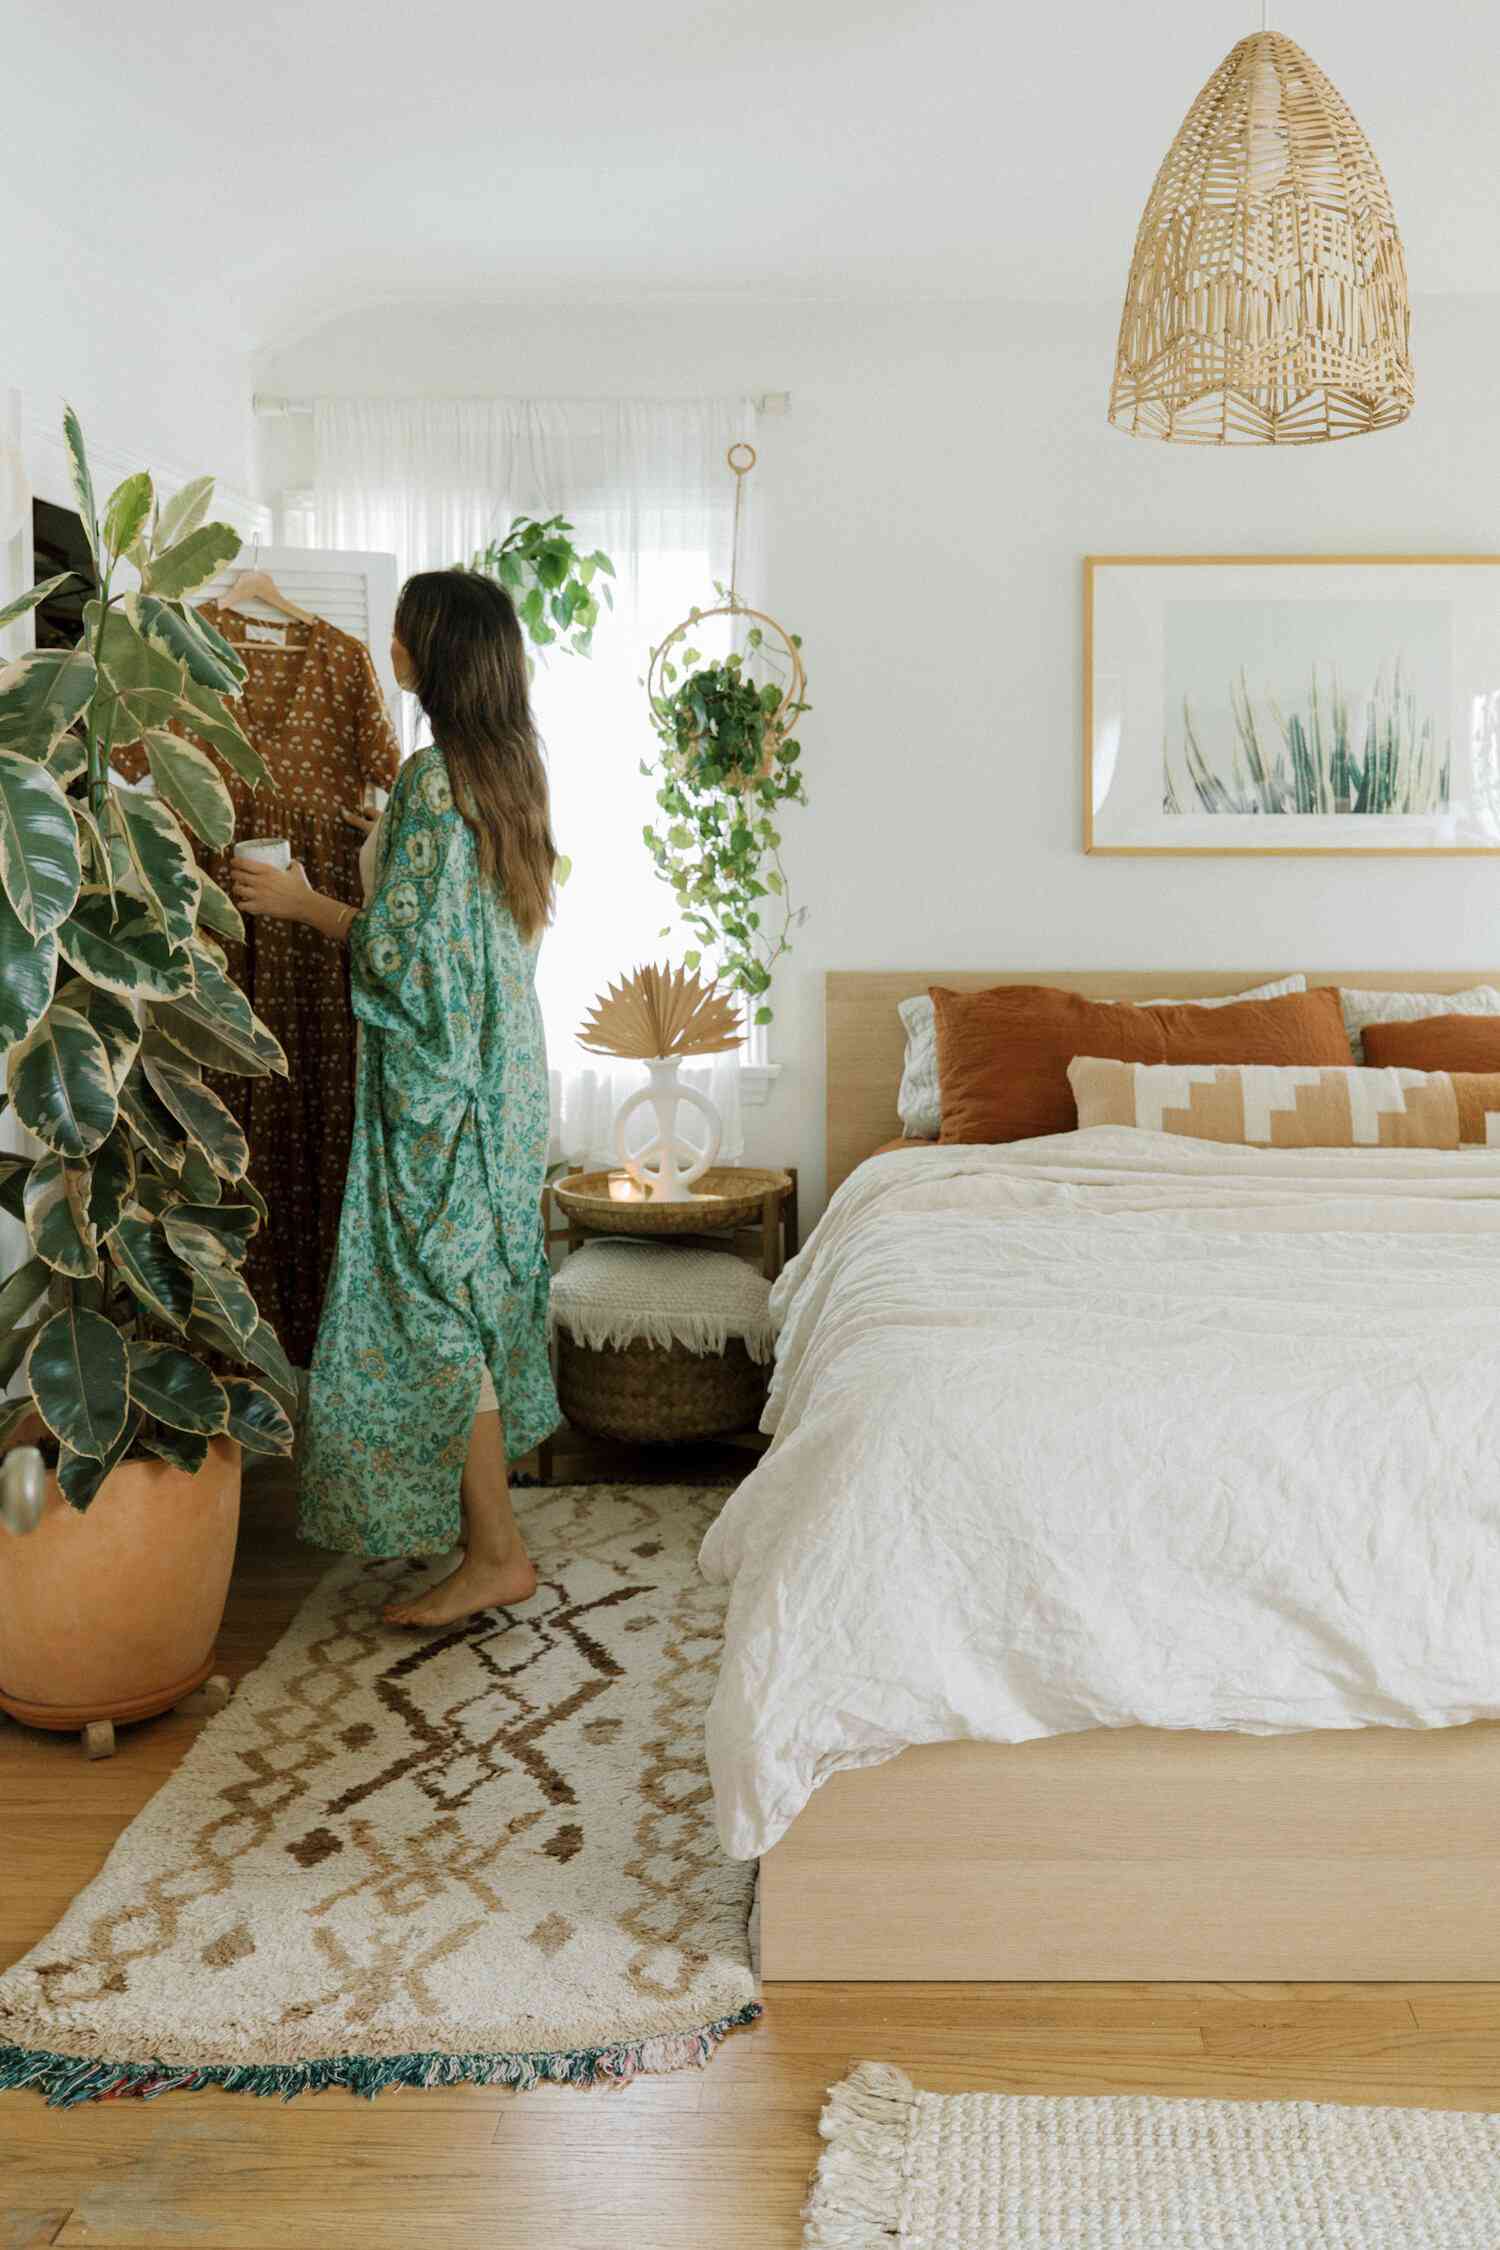 Phòng ngủ theo phong cách Bohemian là lựa chọn hoàn hảo cho những tâm hồn bay bổng, yêu nghệ thuật và cái đẹp.